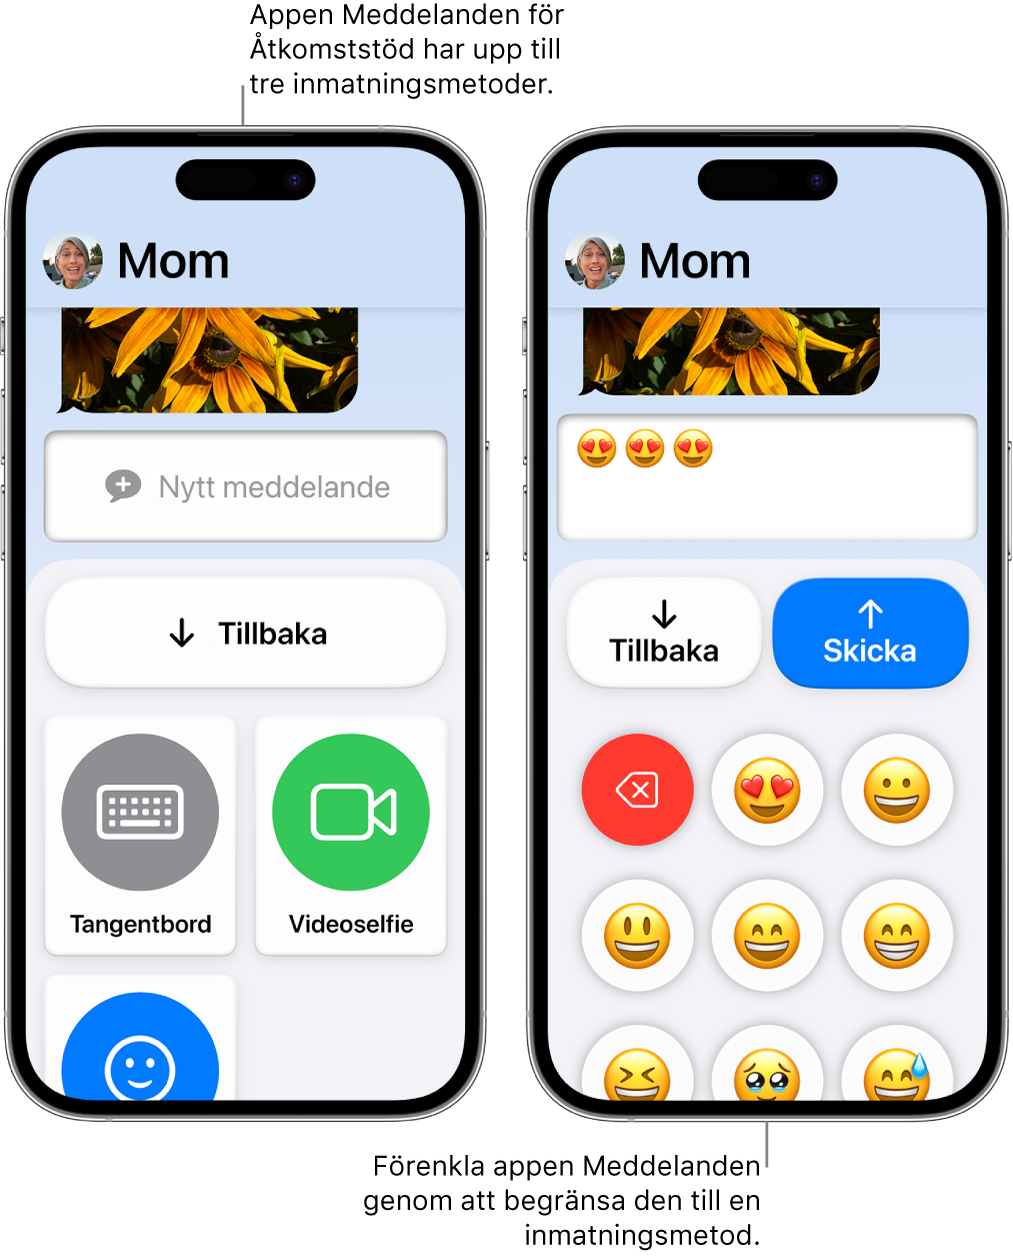 Två iPhone-enheter i Åtkomststöd. En iPhone visar appen Meddelanden med inmatningsmetoder som användaren kan välja mellan, som Tangentbord eller Videoselfie. Den andra visar ett meddelande som skickas med ett emojibaserat tangentbord.